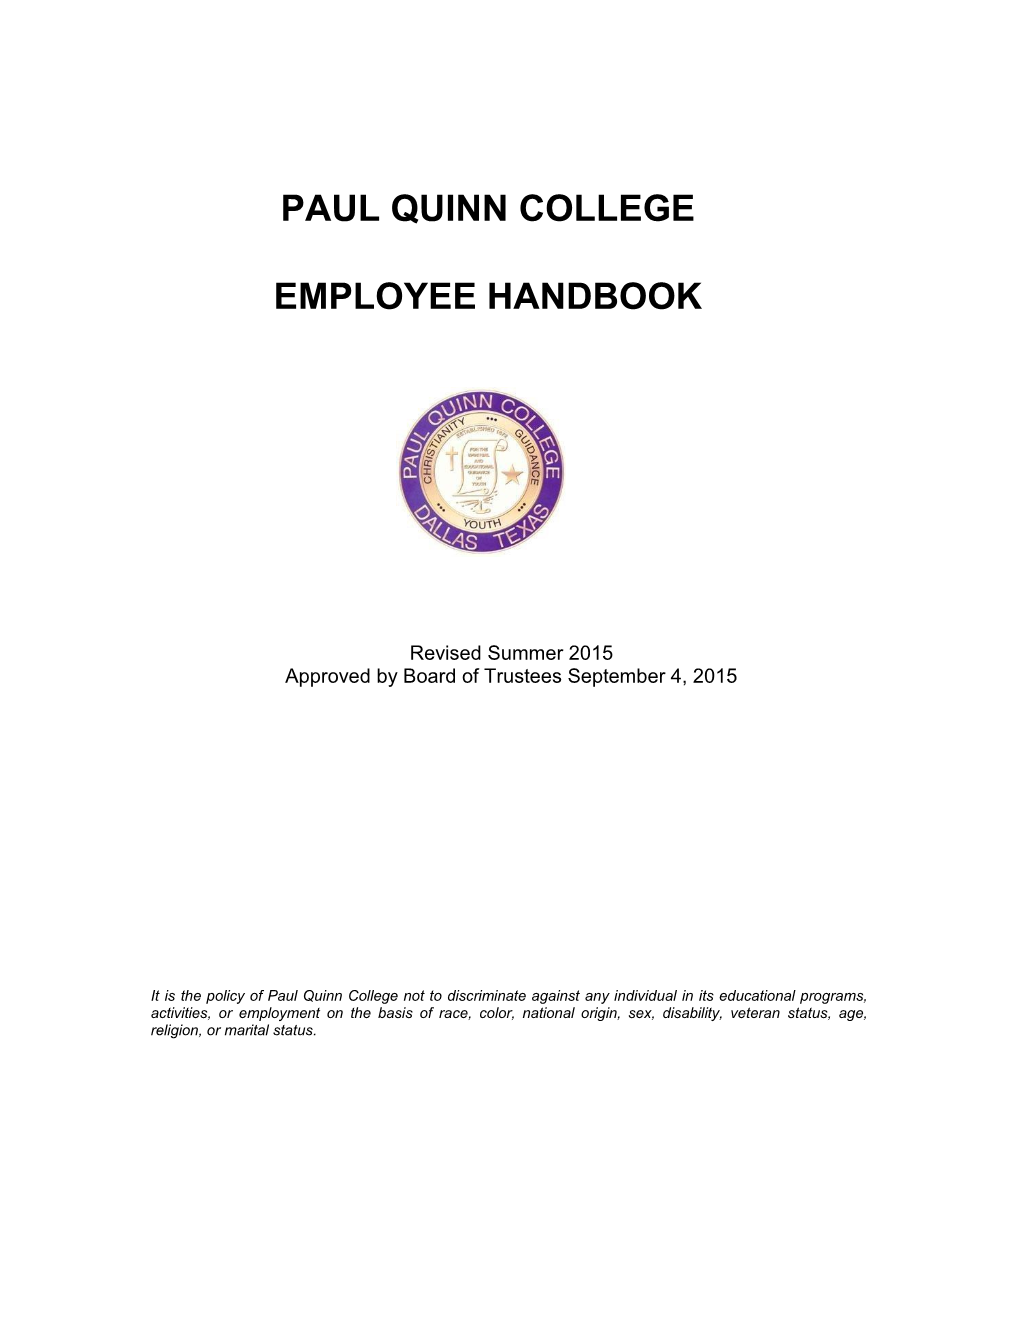 Paul Quinn College Employee Handbook